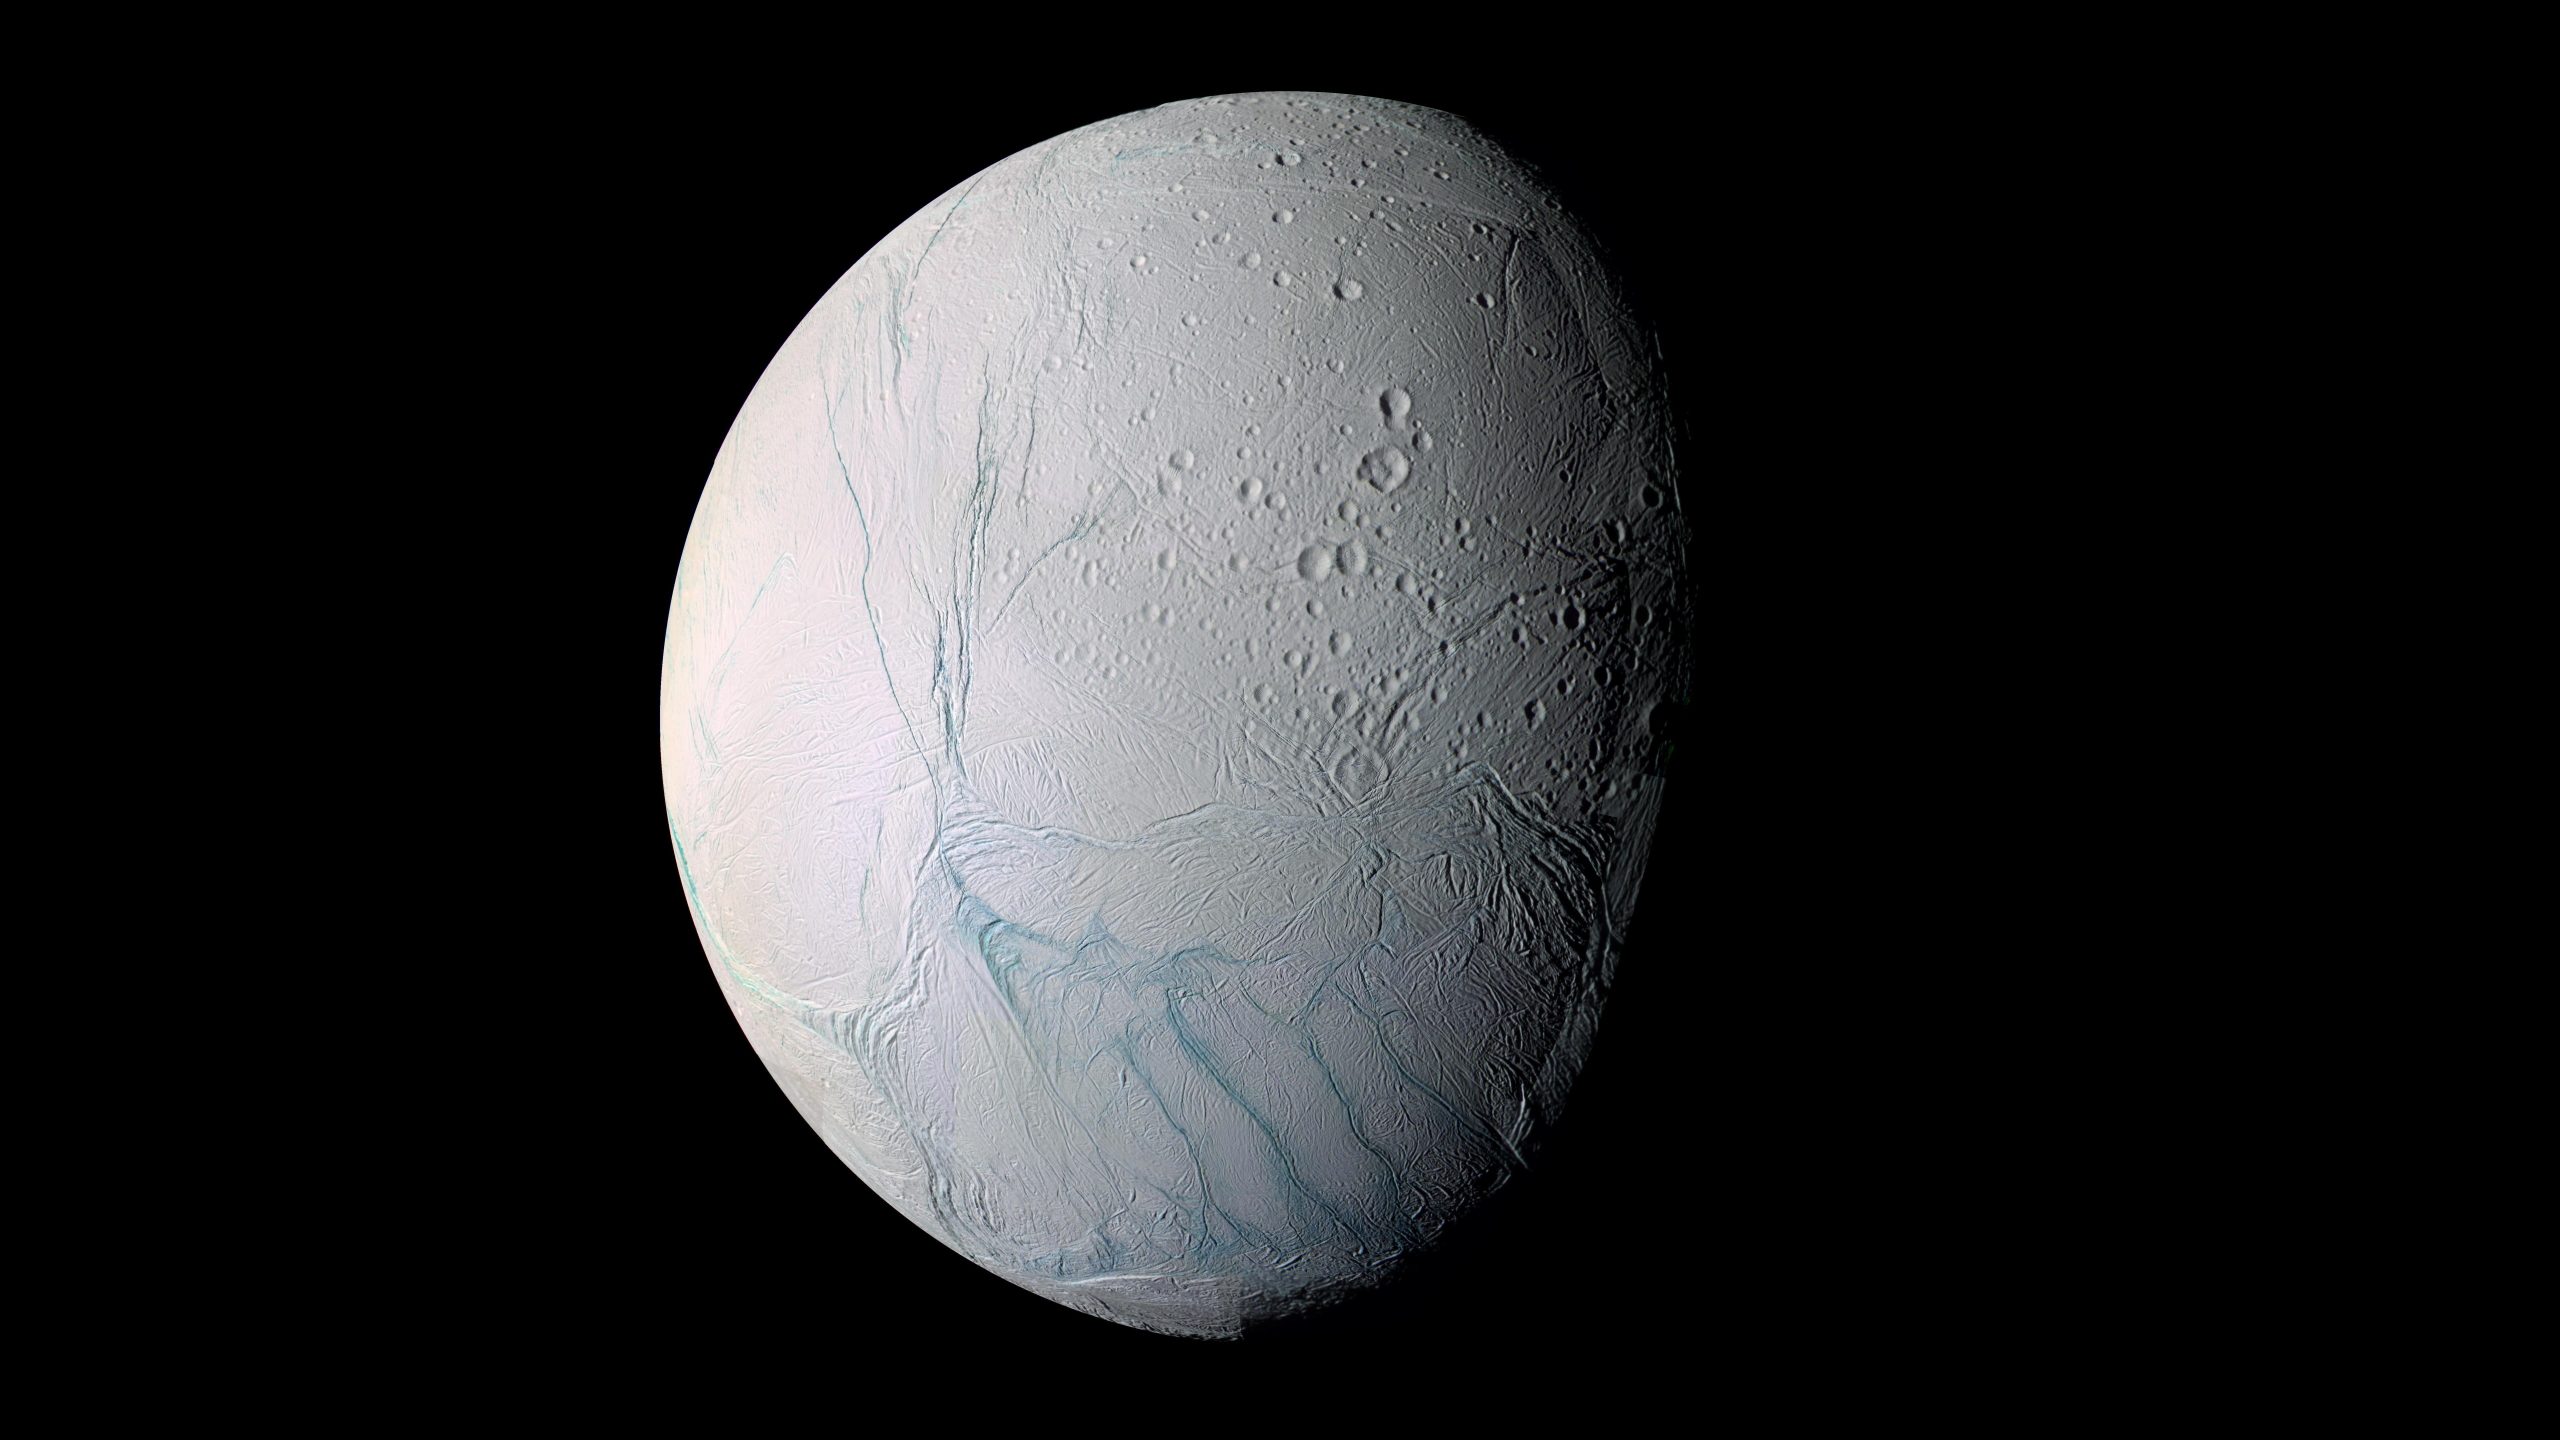 Gray moon wallpaper, planet, Enceladus, Solar System, Saturn’s moon